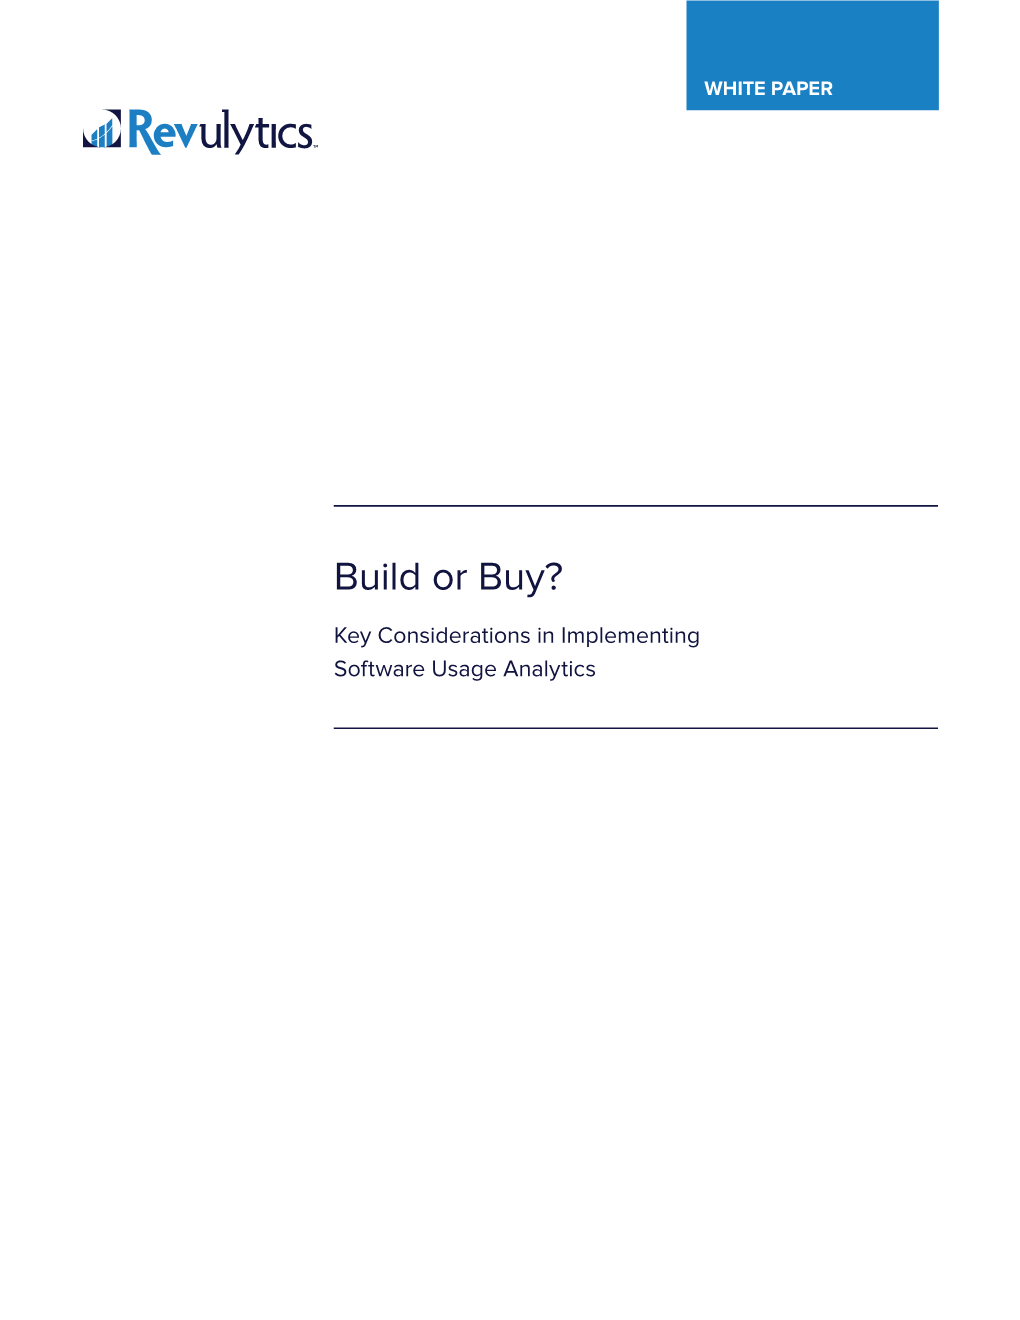 Build Or Buy?